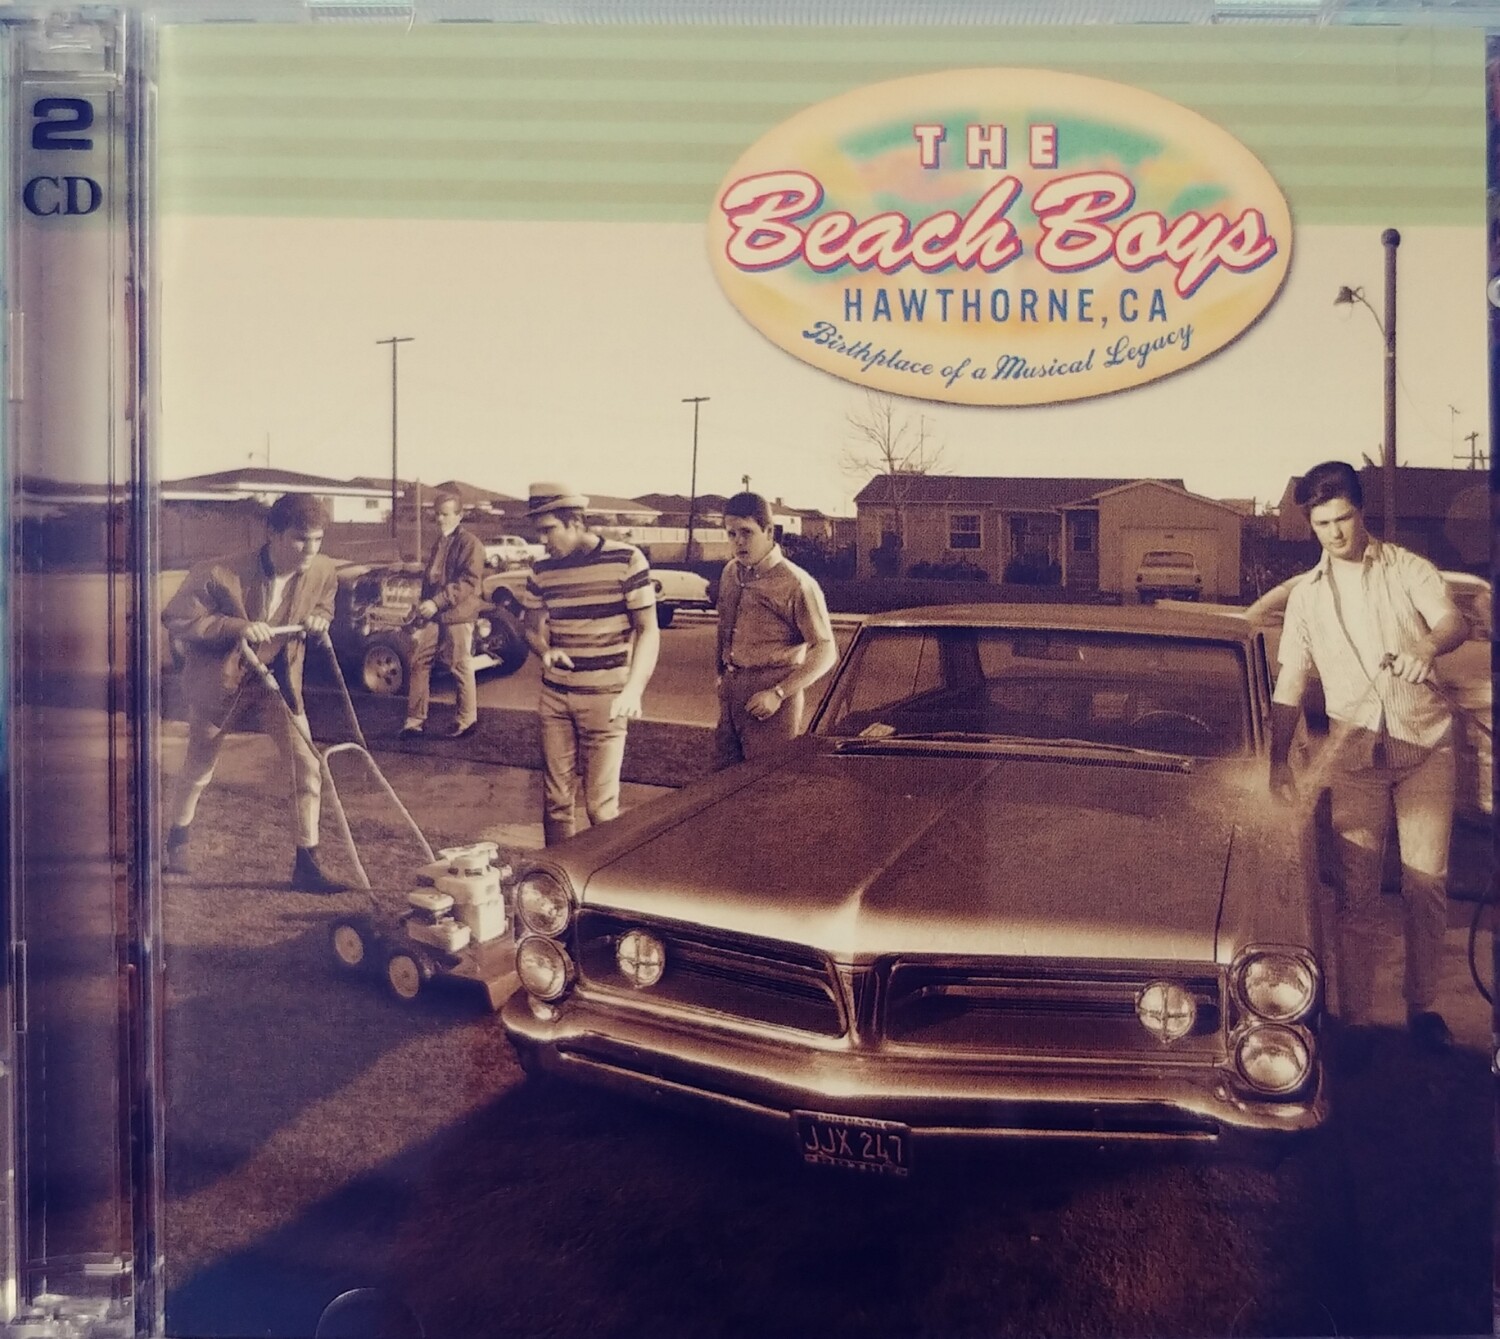 The Beach Boys - Hawthorne, CA (CD)